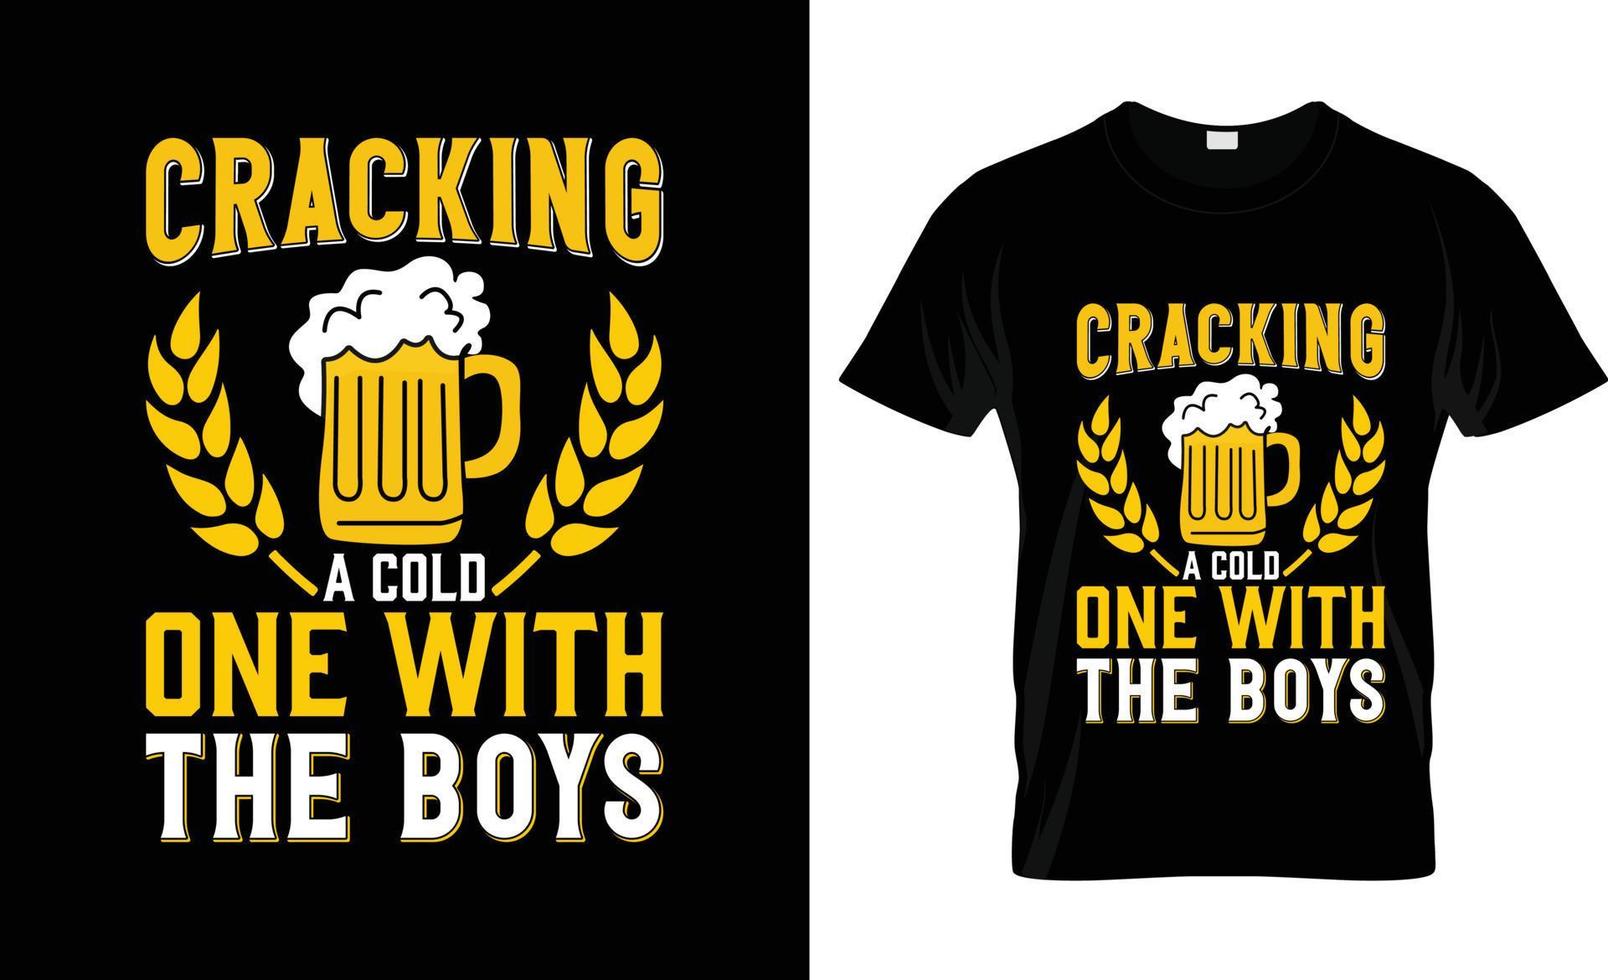 eslogan de camisetas de cerveza artesanal y diseño de ropa, tipografía de cerveza artesanal, vector de cerveza artesanal, ilustración de cerveza artesanal